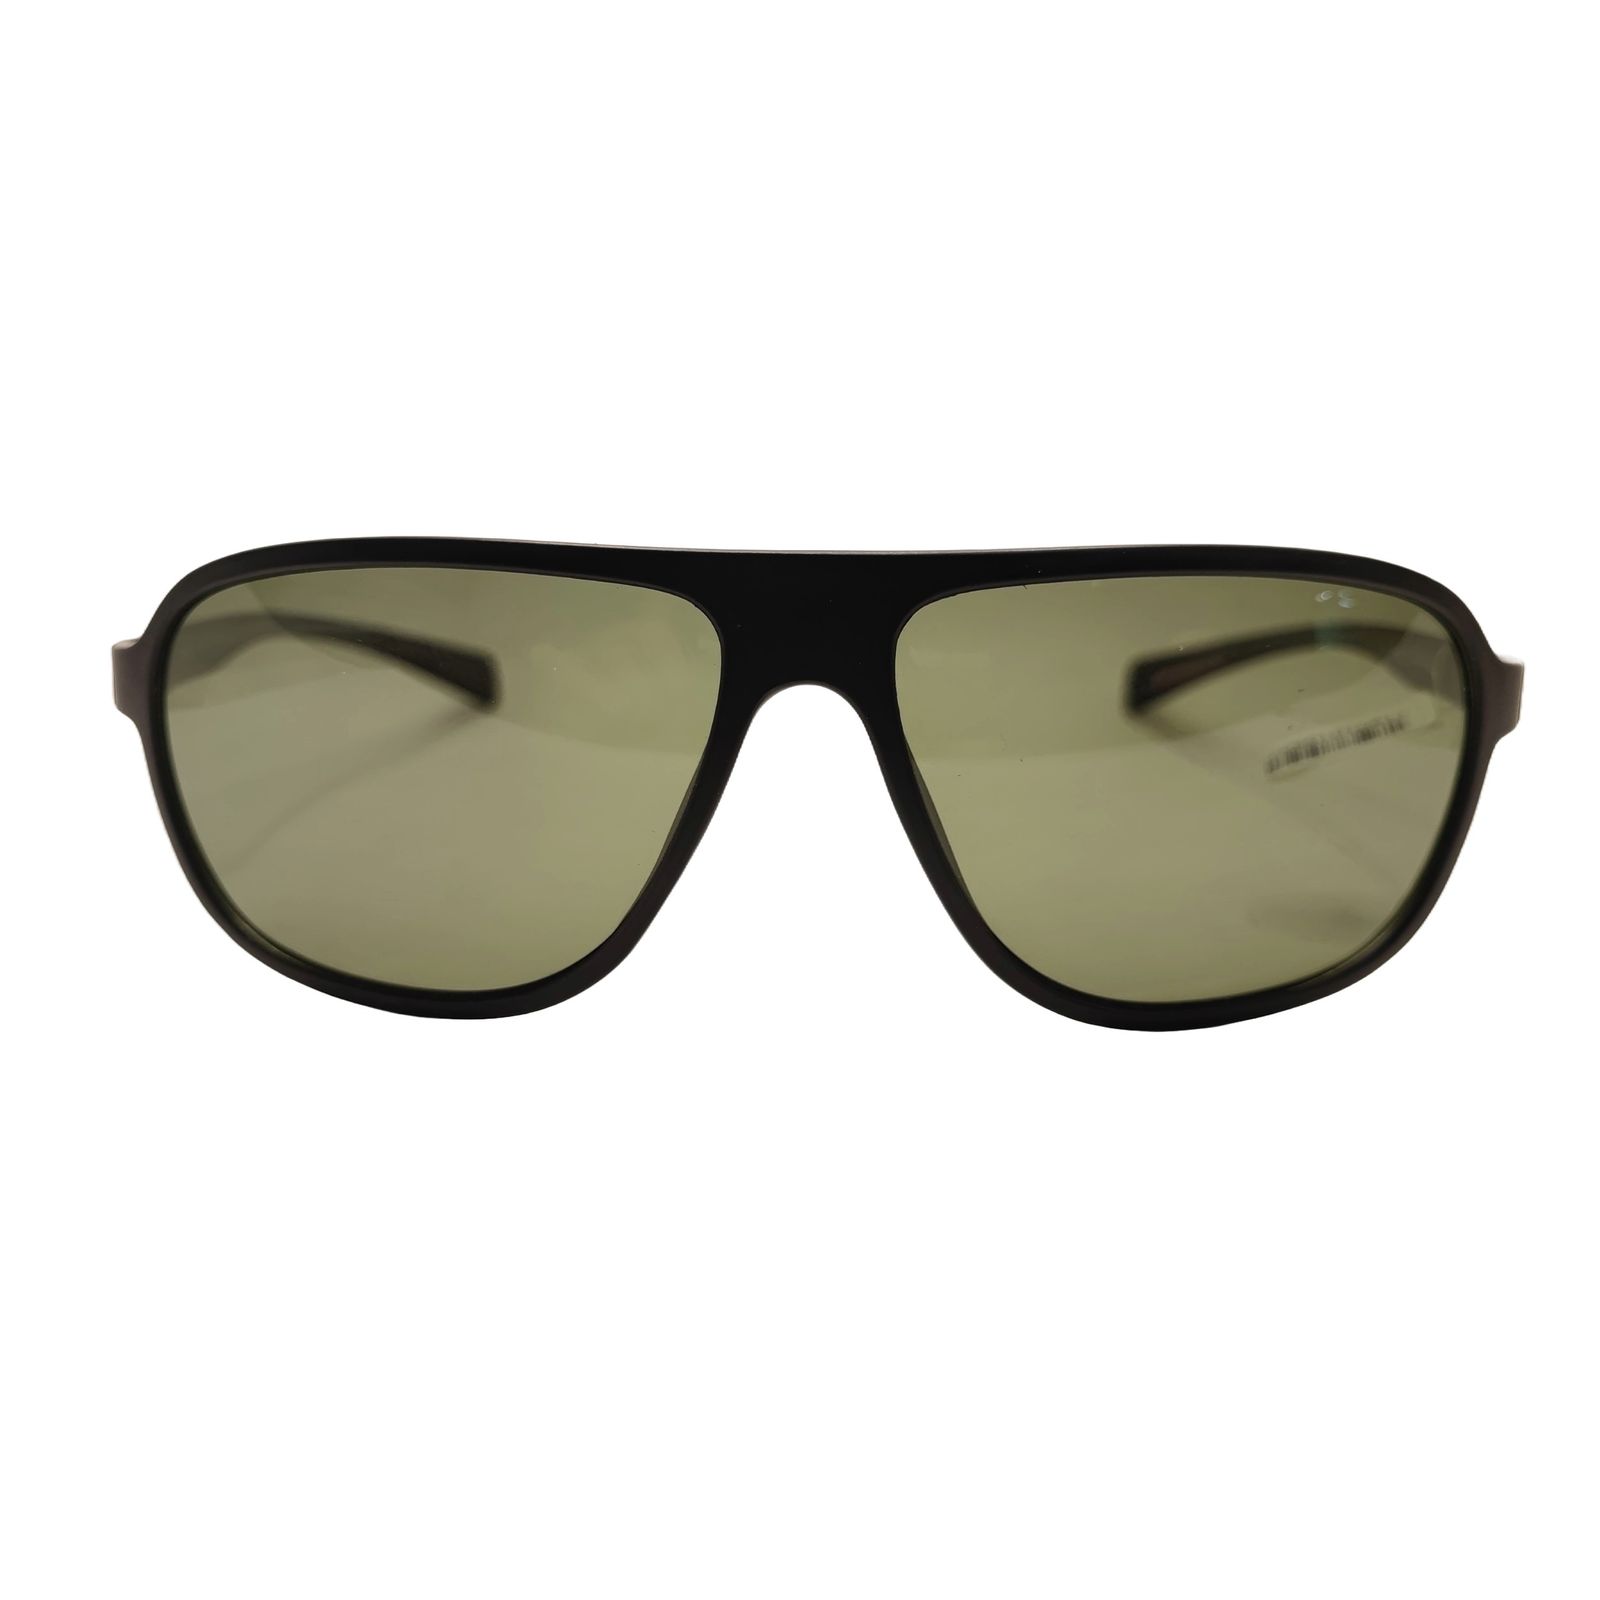 عینک آفتابی کلارک بای تروی کولیزوم مدل S4001 -  - 1